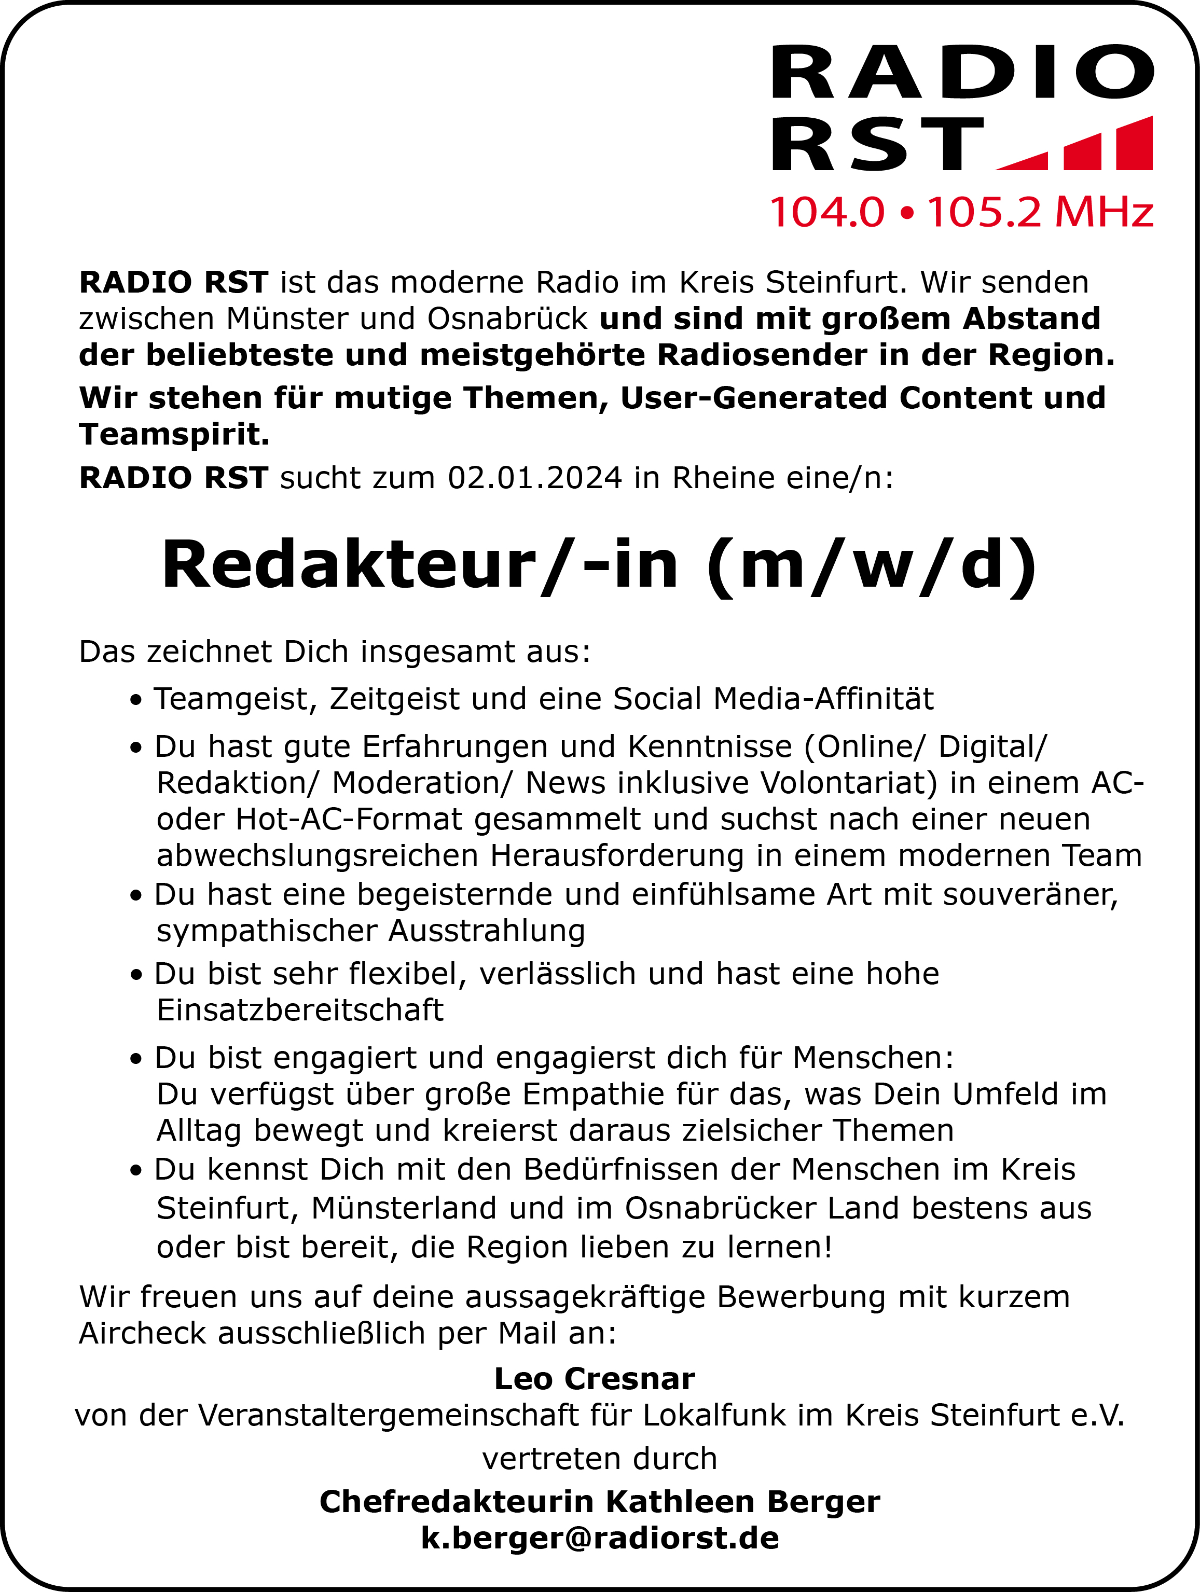 RADIO RST sucht zum 02.01. 2024 in Rheine eine/n Redakteur/-in (m/w/d).